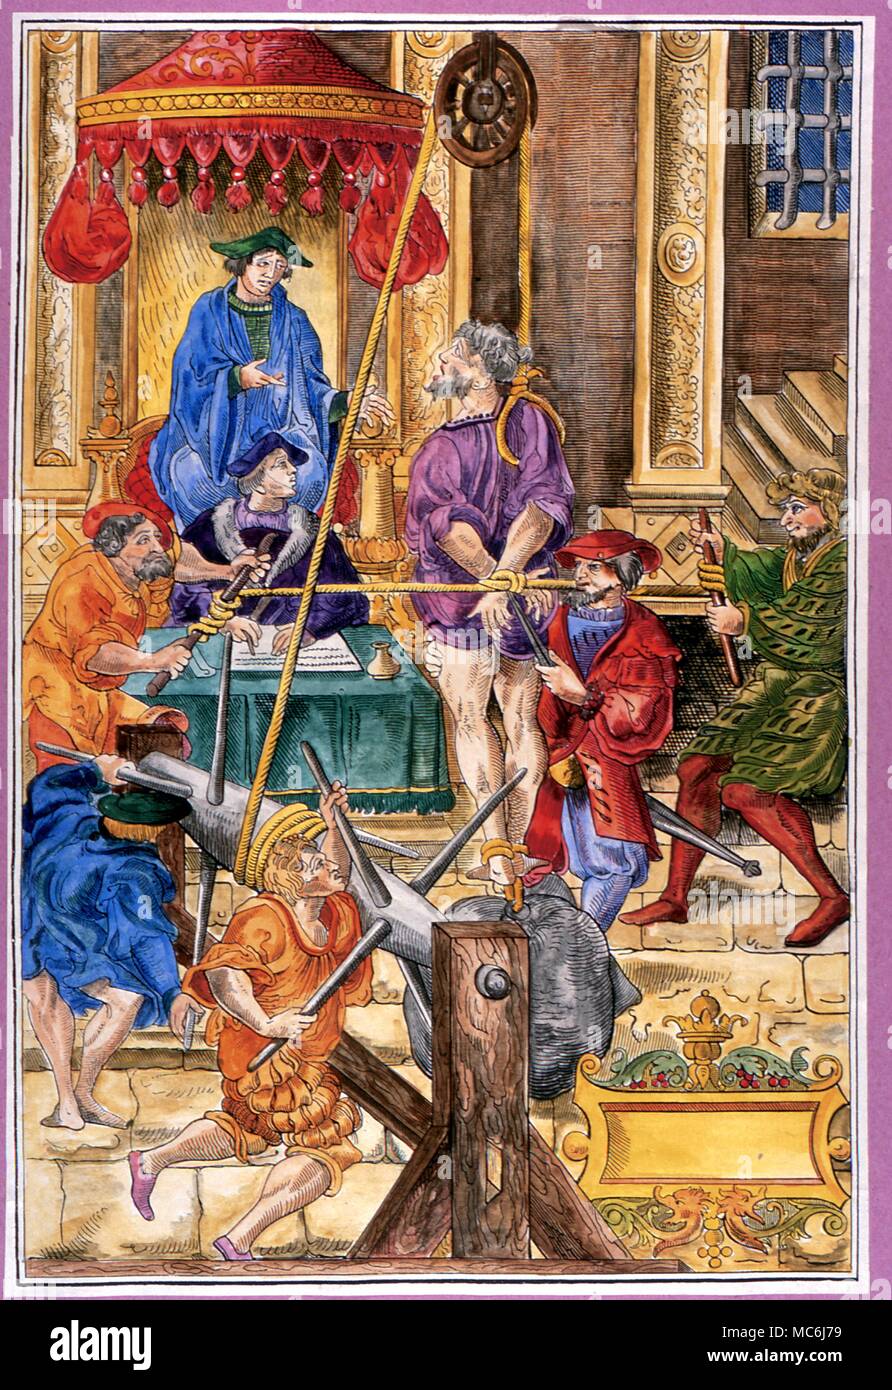 La Torture - Estrapade, instrument de torture particulièrement utilisé par l'Inquisition. Gravure sur bois, 1541 Banque D'Images